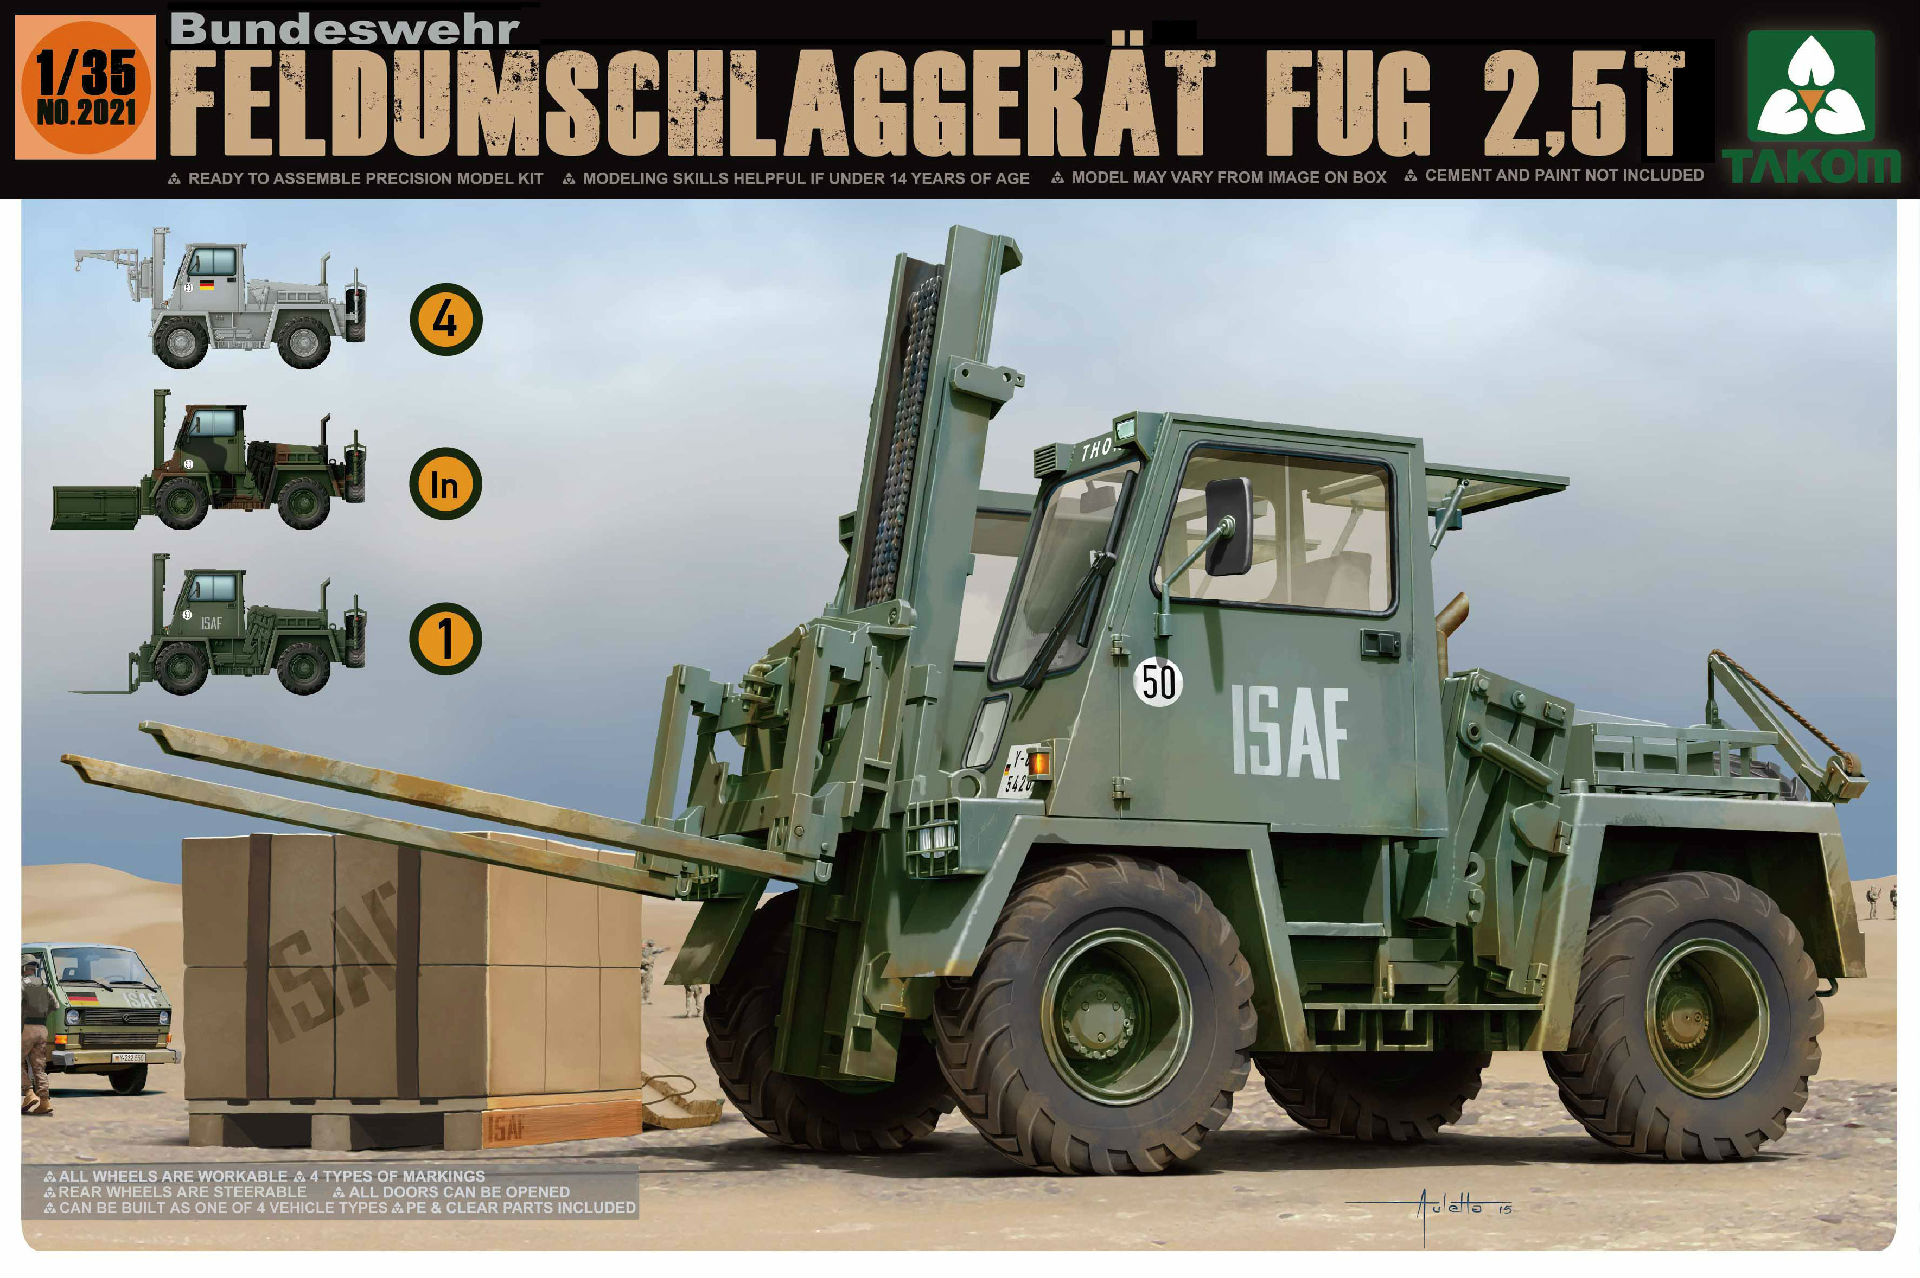 2021  техника и вооружение  Погрузчик  Feldumschlaggerat FUG 2,5t  (1:35)